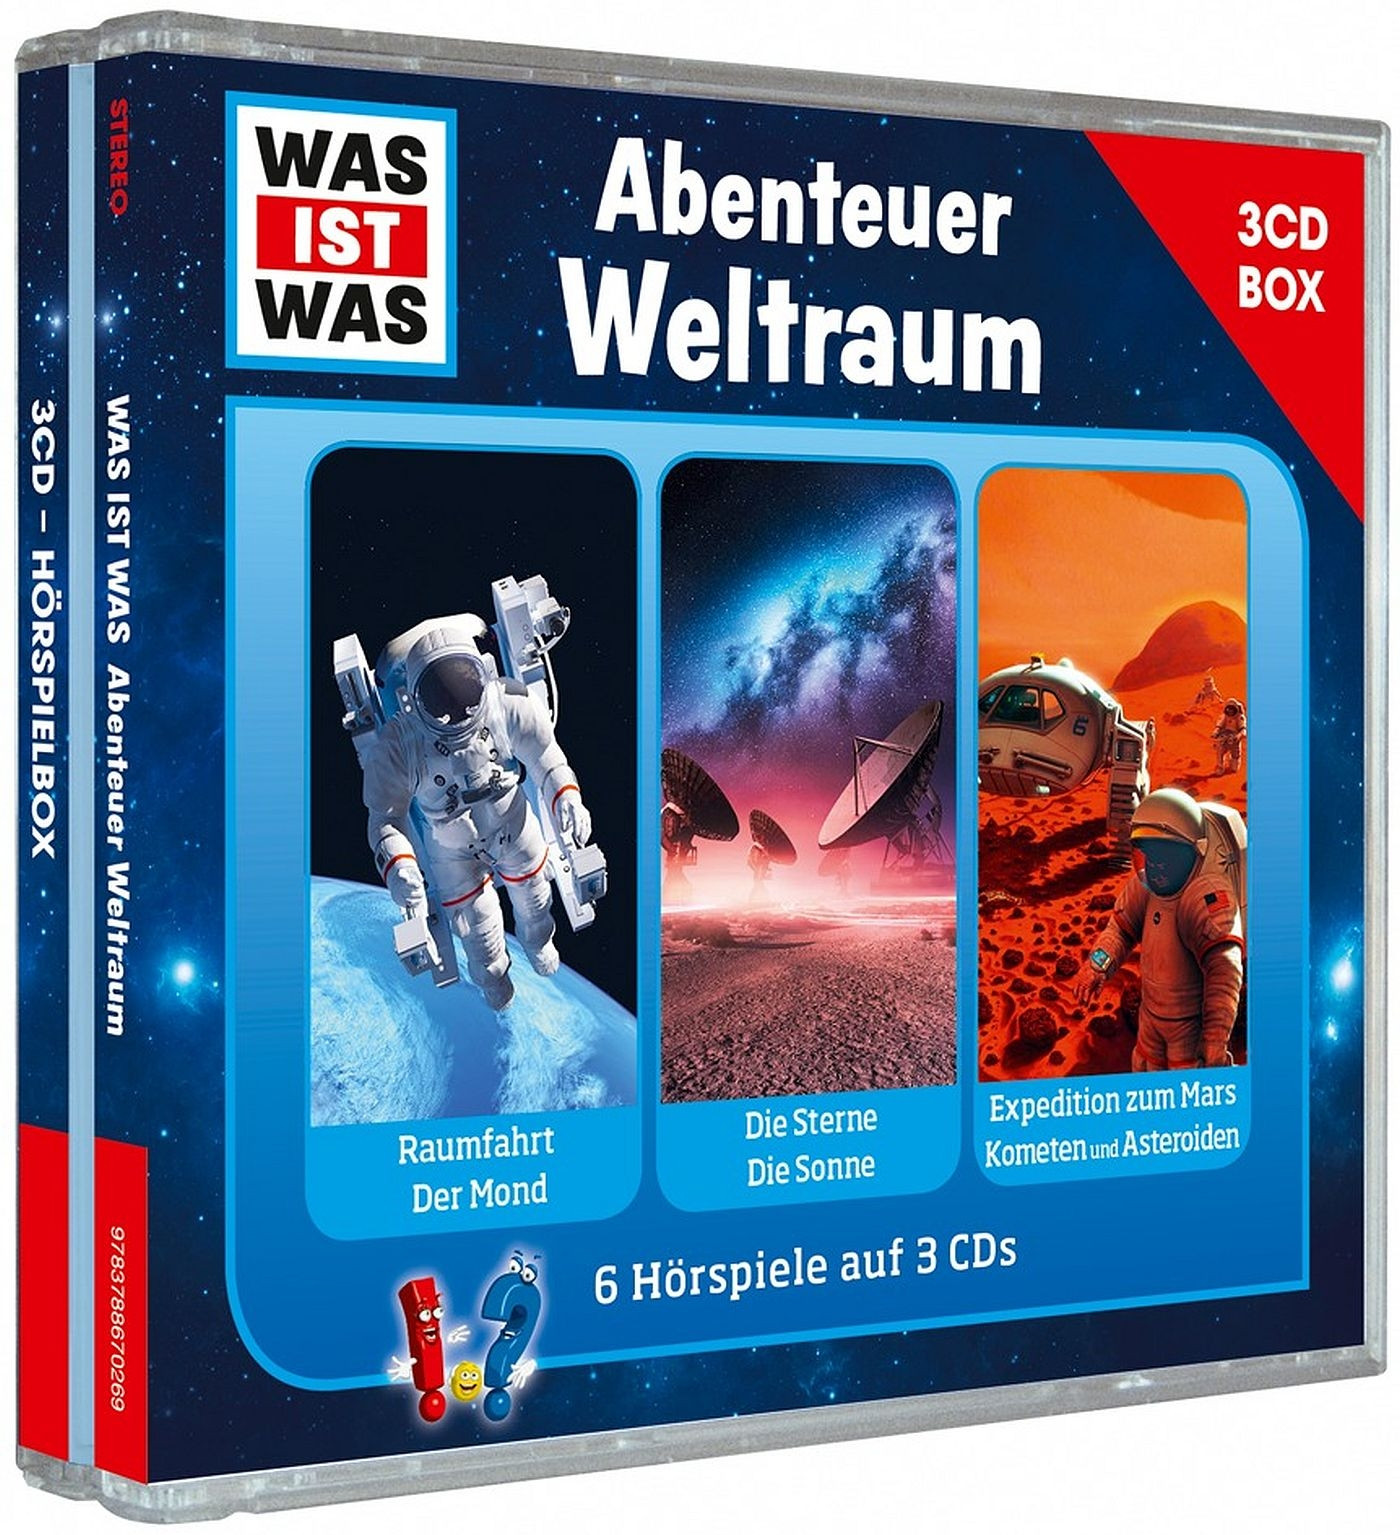 WAS IST WAS 3-CD-Hörspielbox Vol. 6: Abenteuer Weltraum